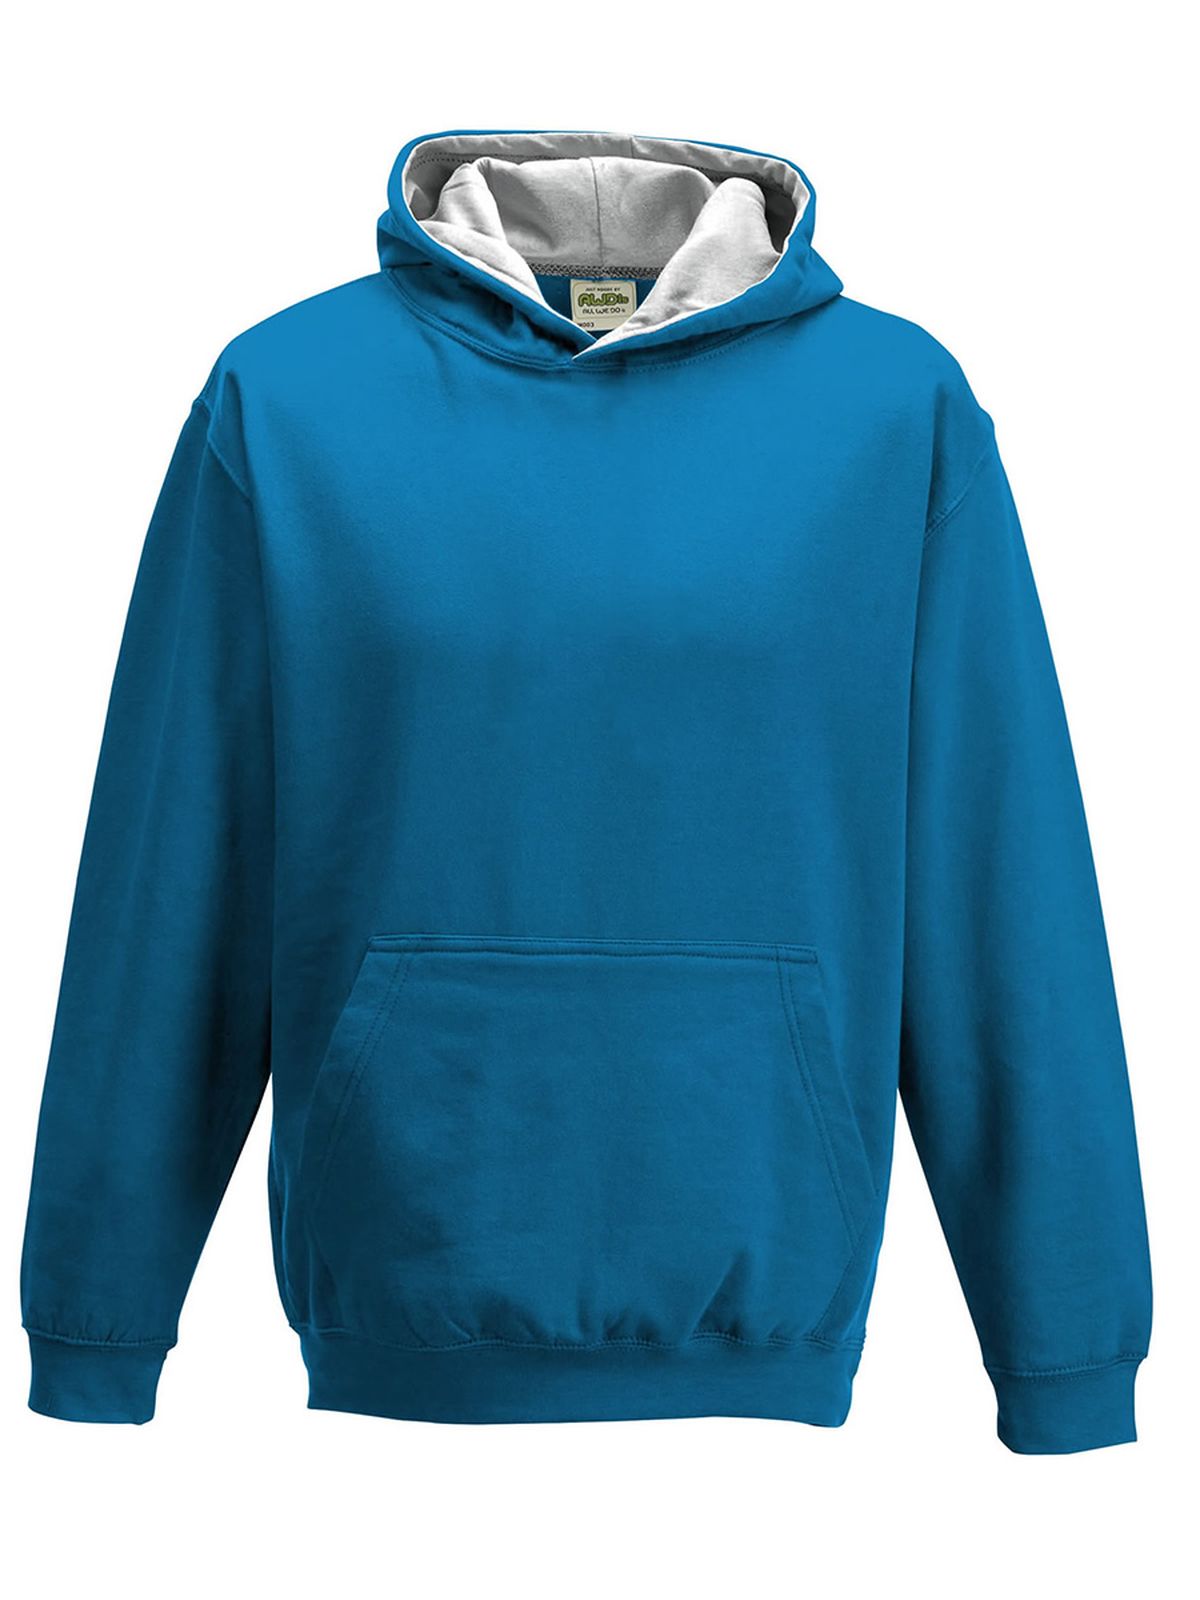 kids-varsity-hoodie-sapphire-blue-heather-grey.webp